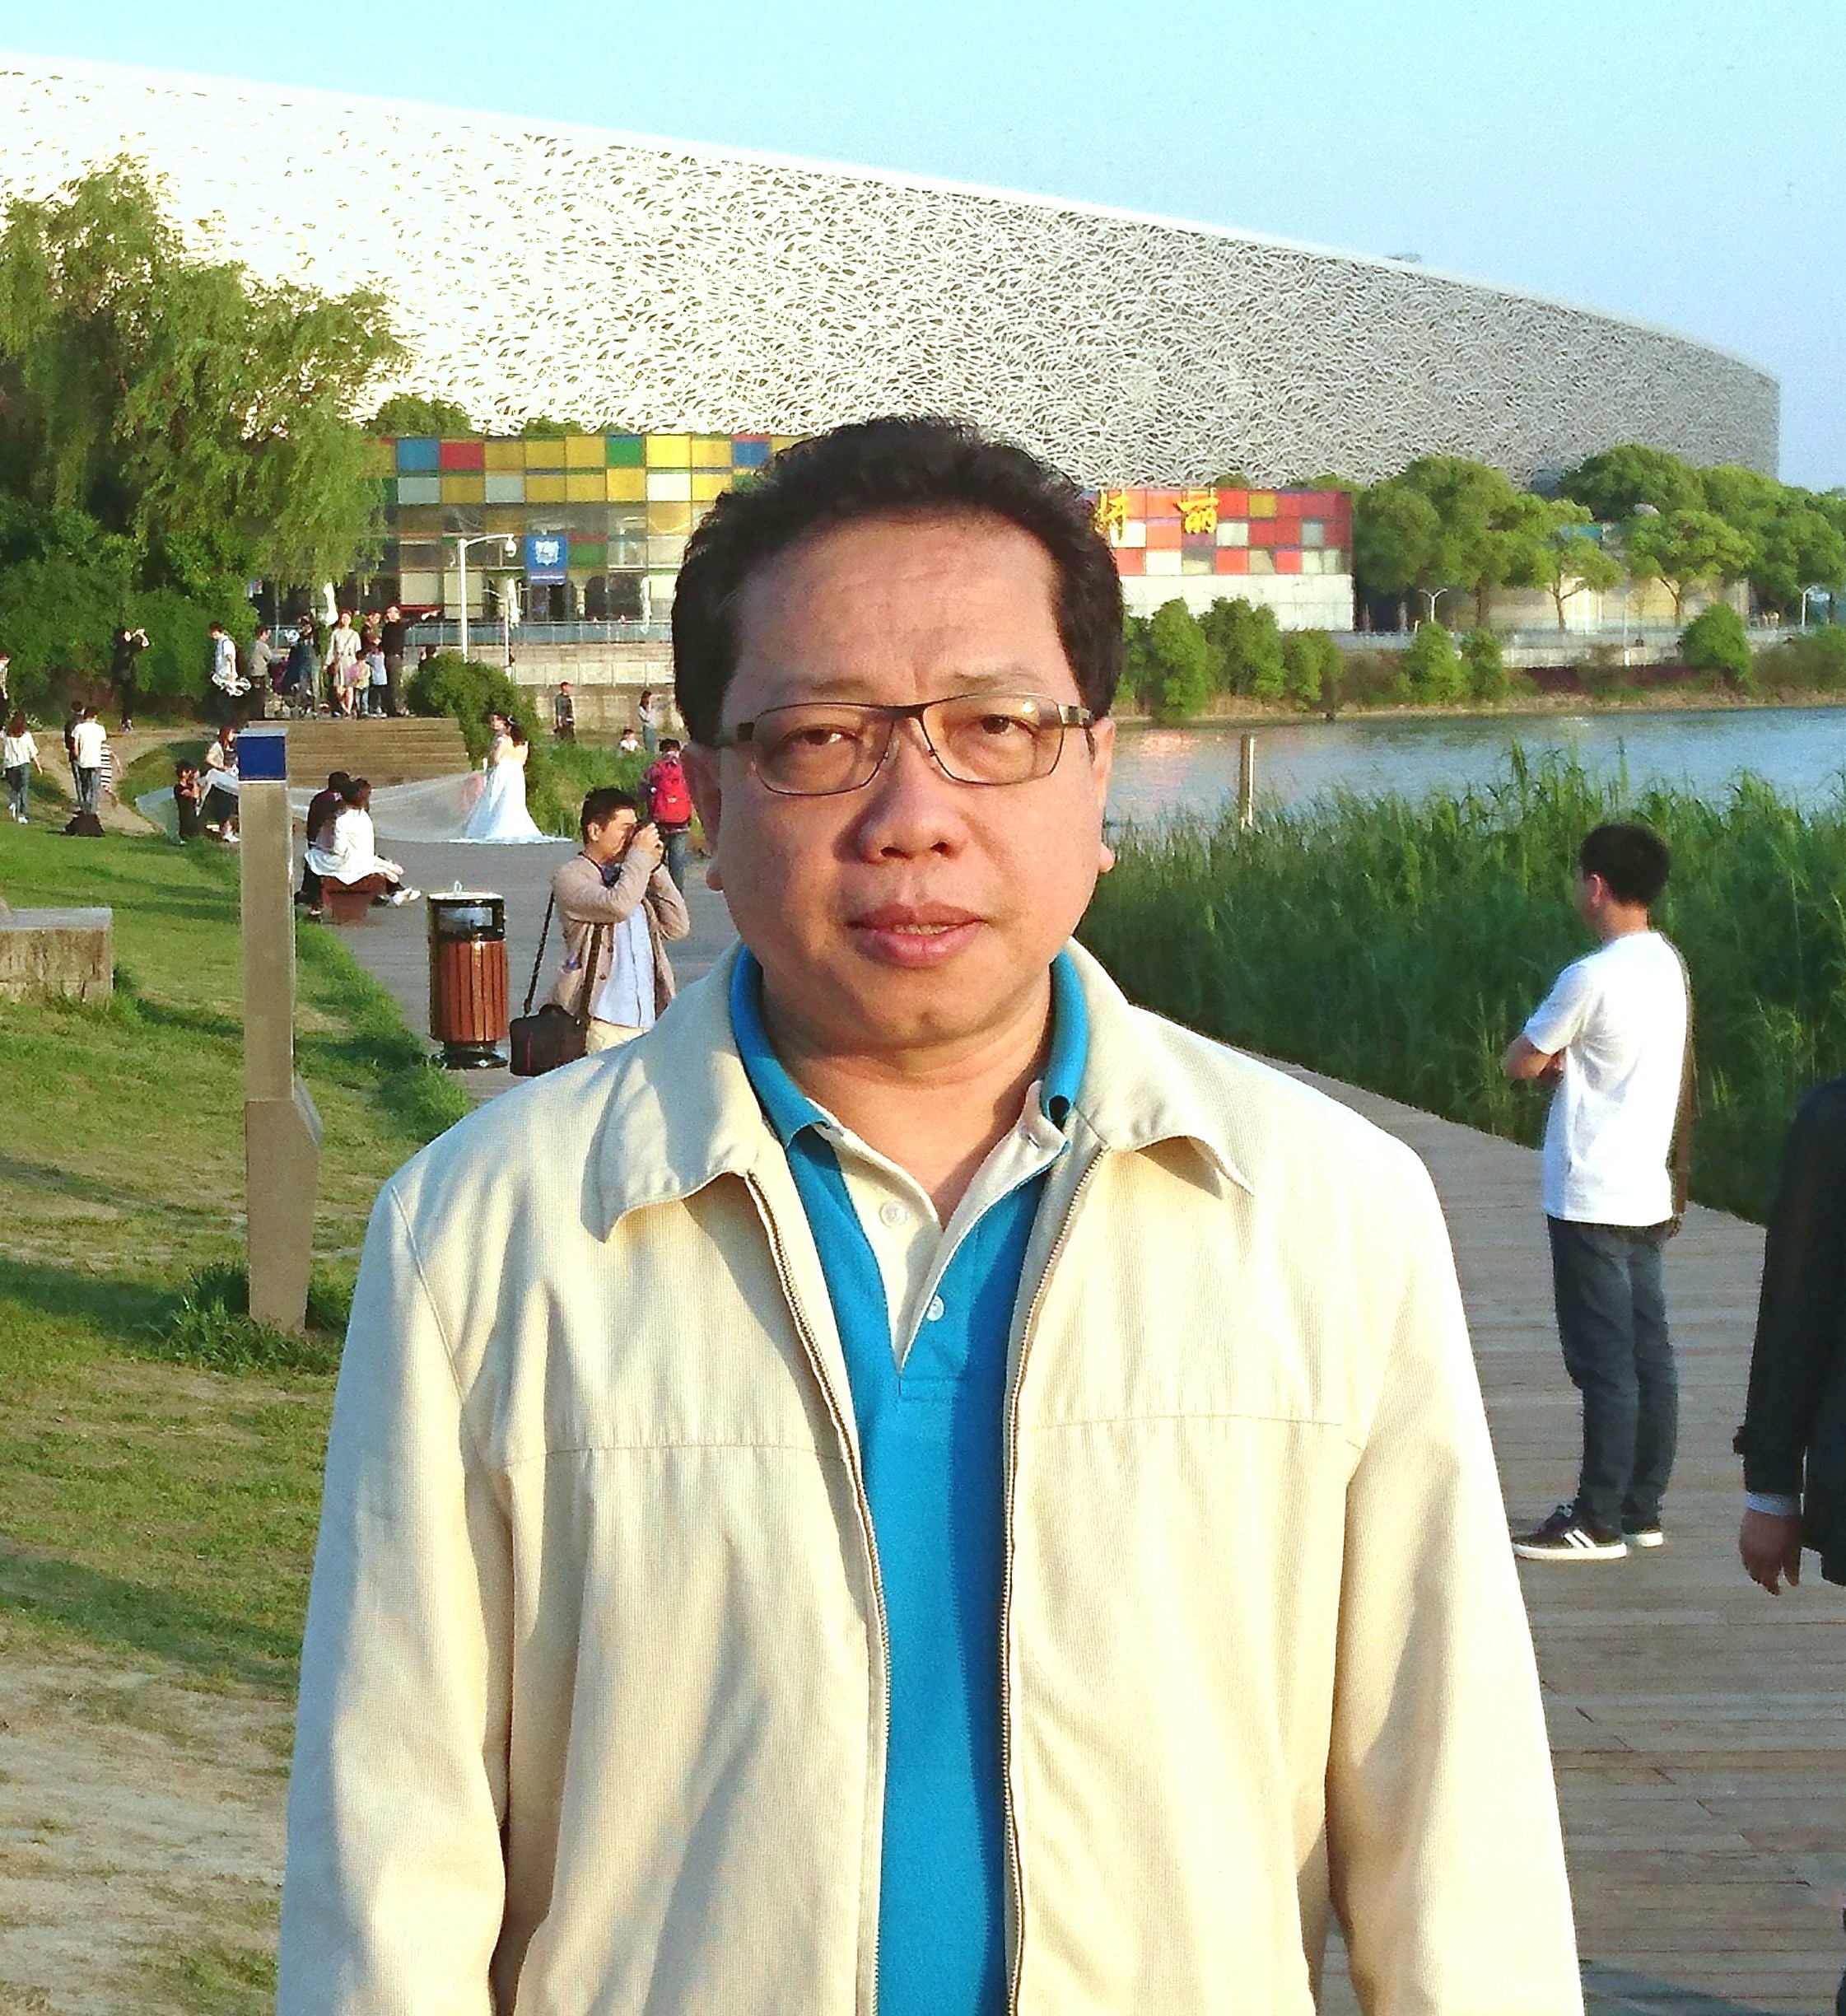 Heo Yew Seng, managing director